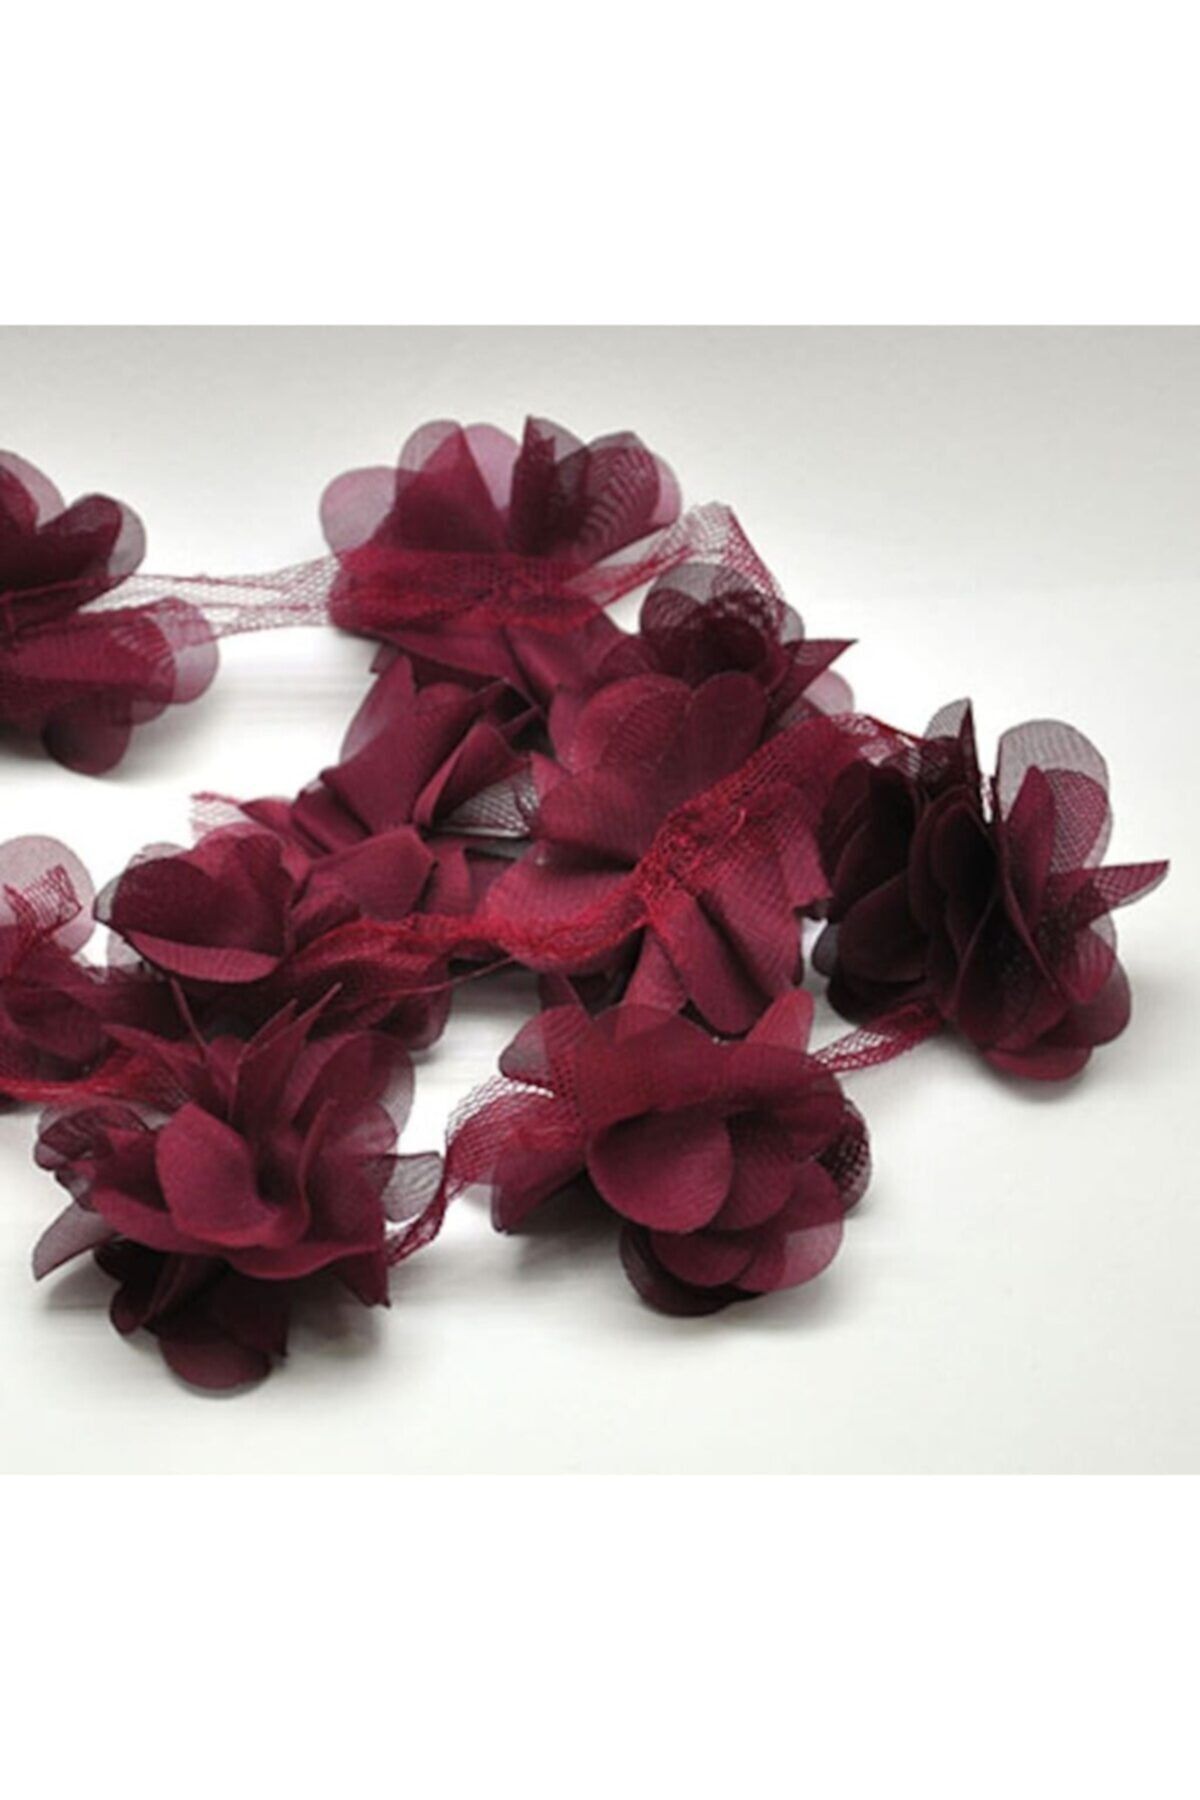 Aker Hediyelik Bordo 1m Gül Lazer Kesim Çiçek 12-13 Adet Organze Tül Kenar Süsü Tekstil Tasarım Kumaşı Yapay Süs